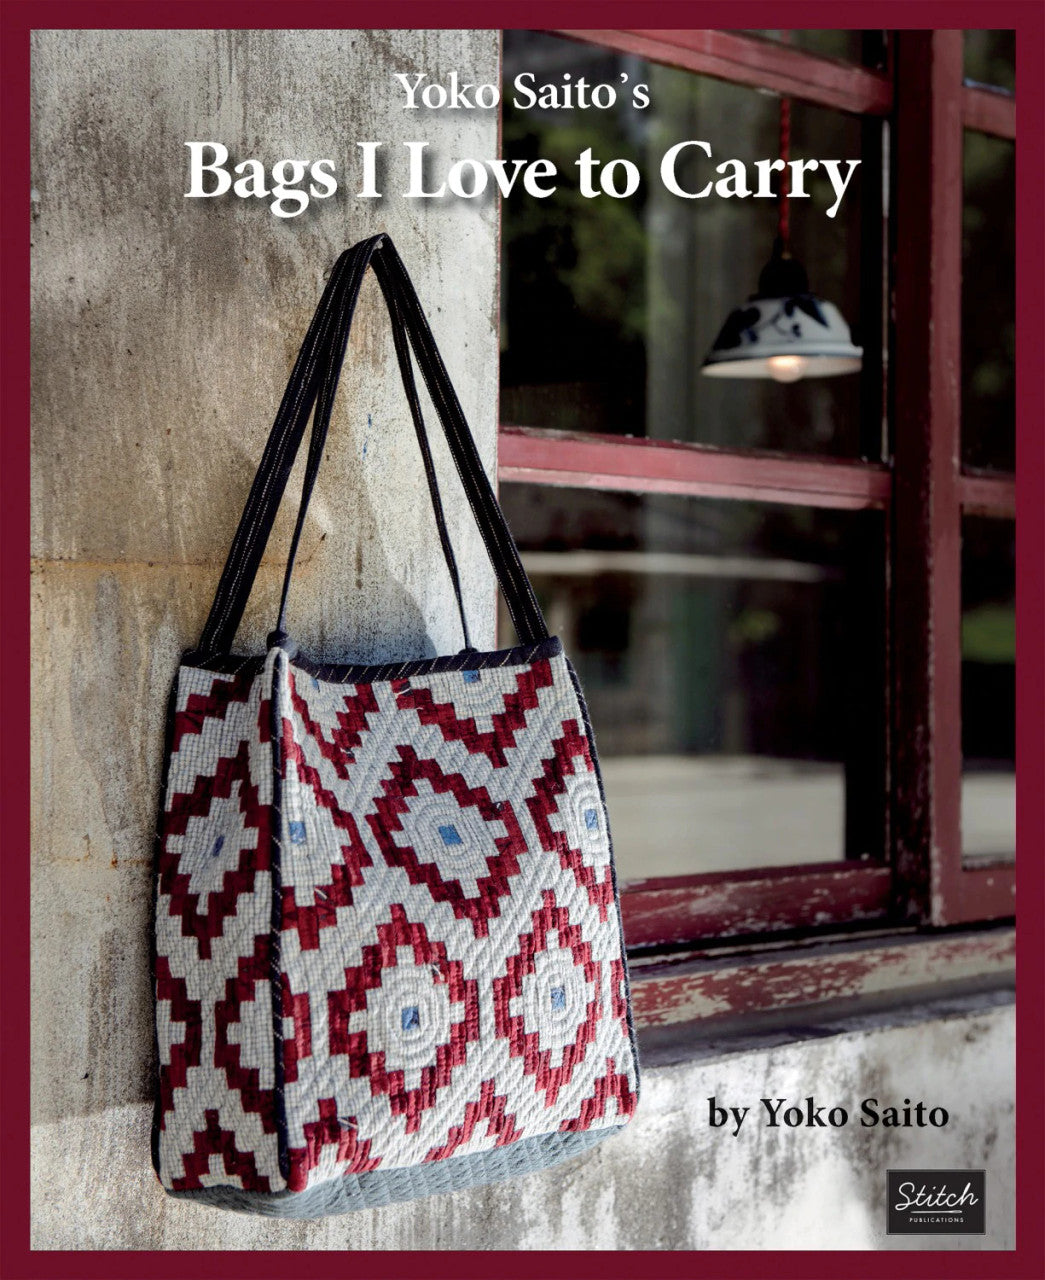 Yoko Saito's Bags I Love To Carry Book by Yoko Saito